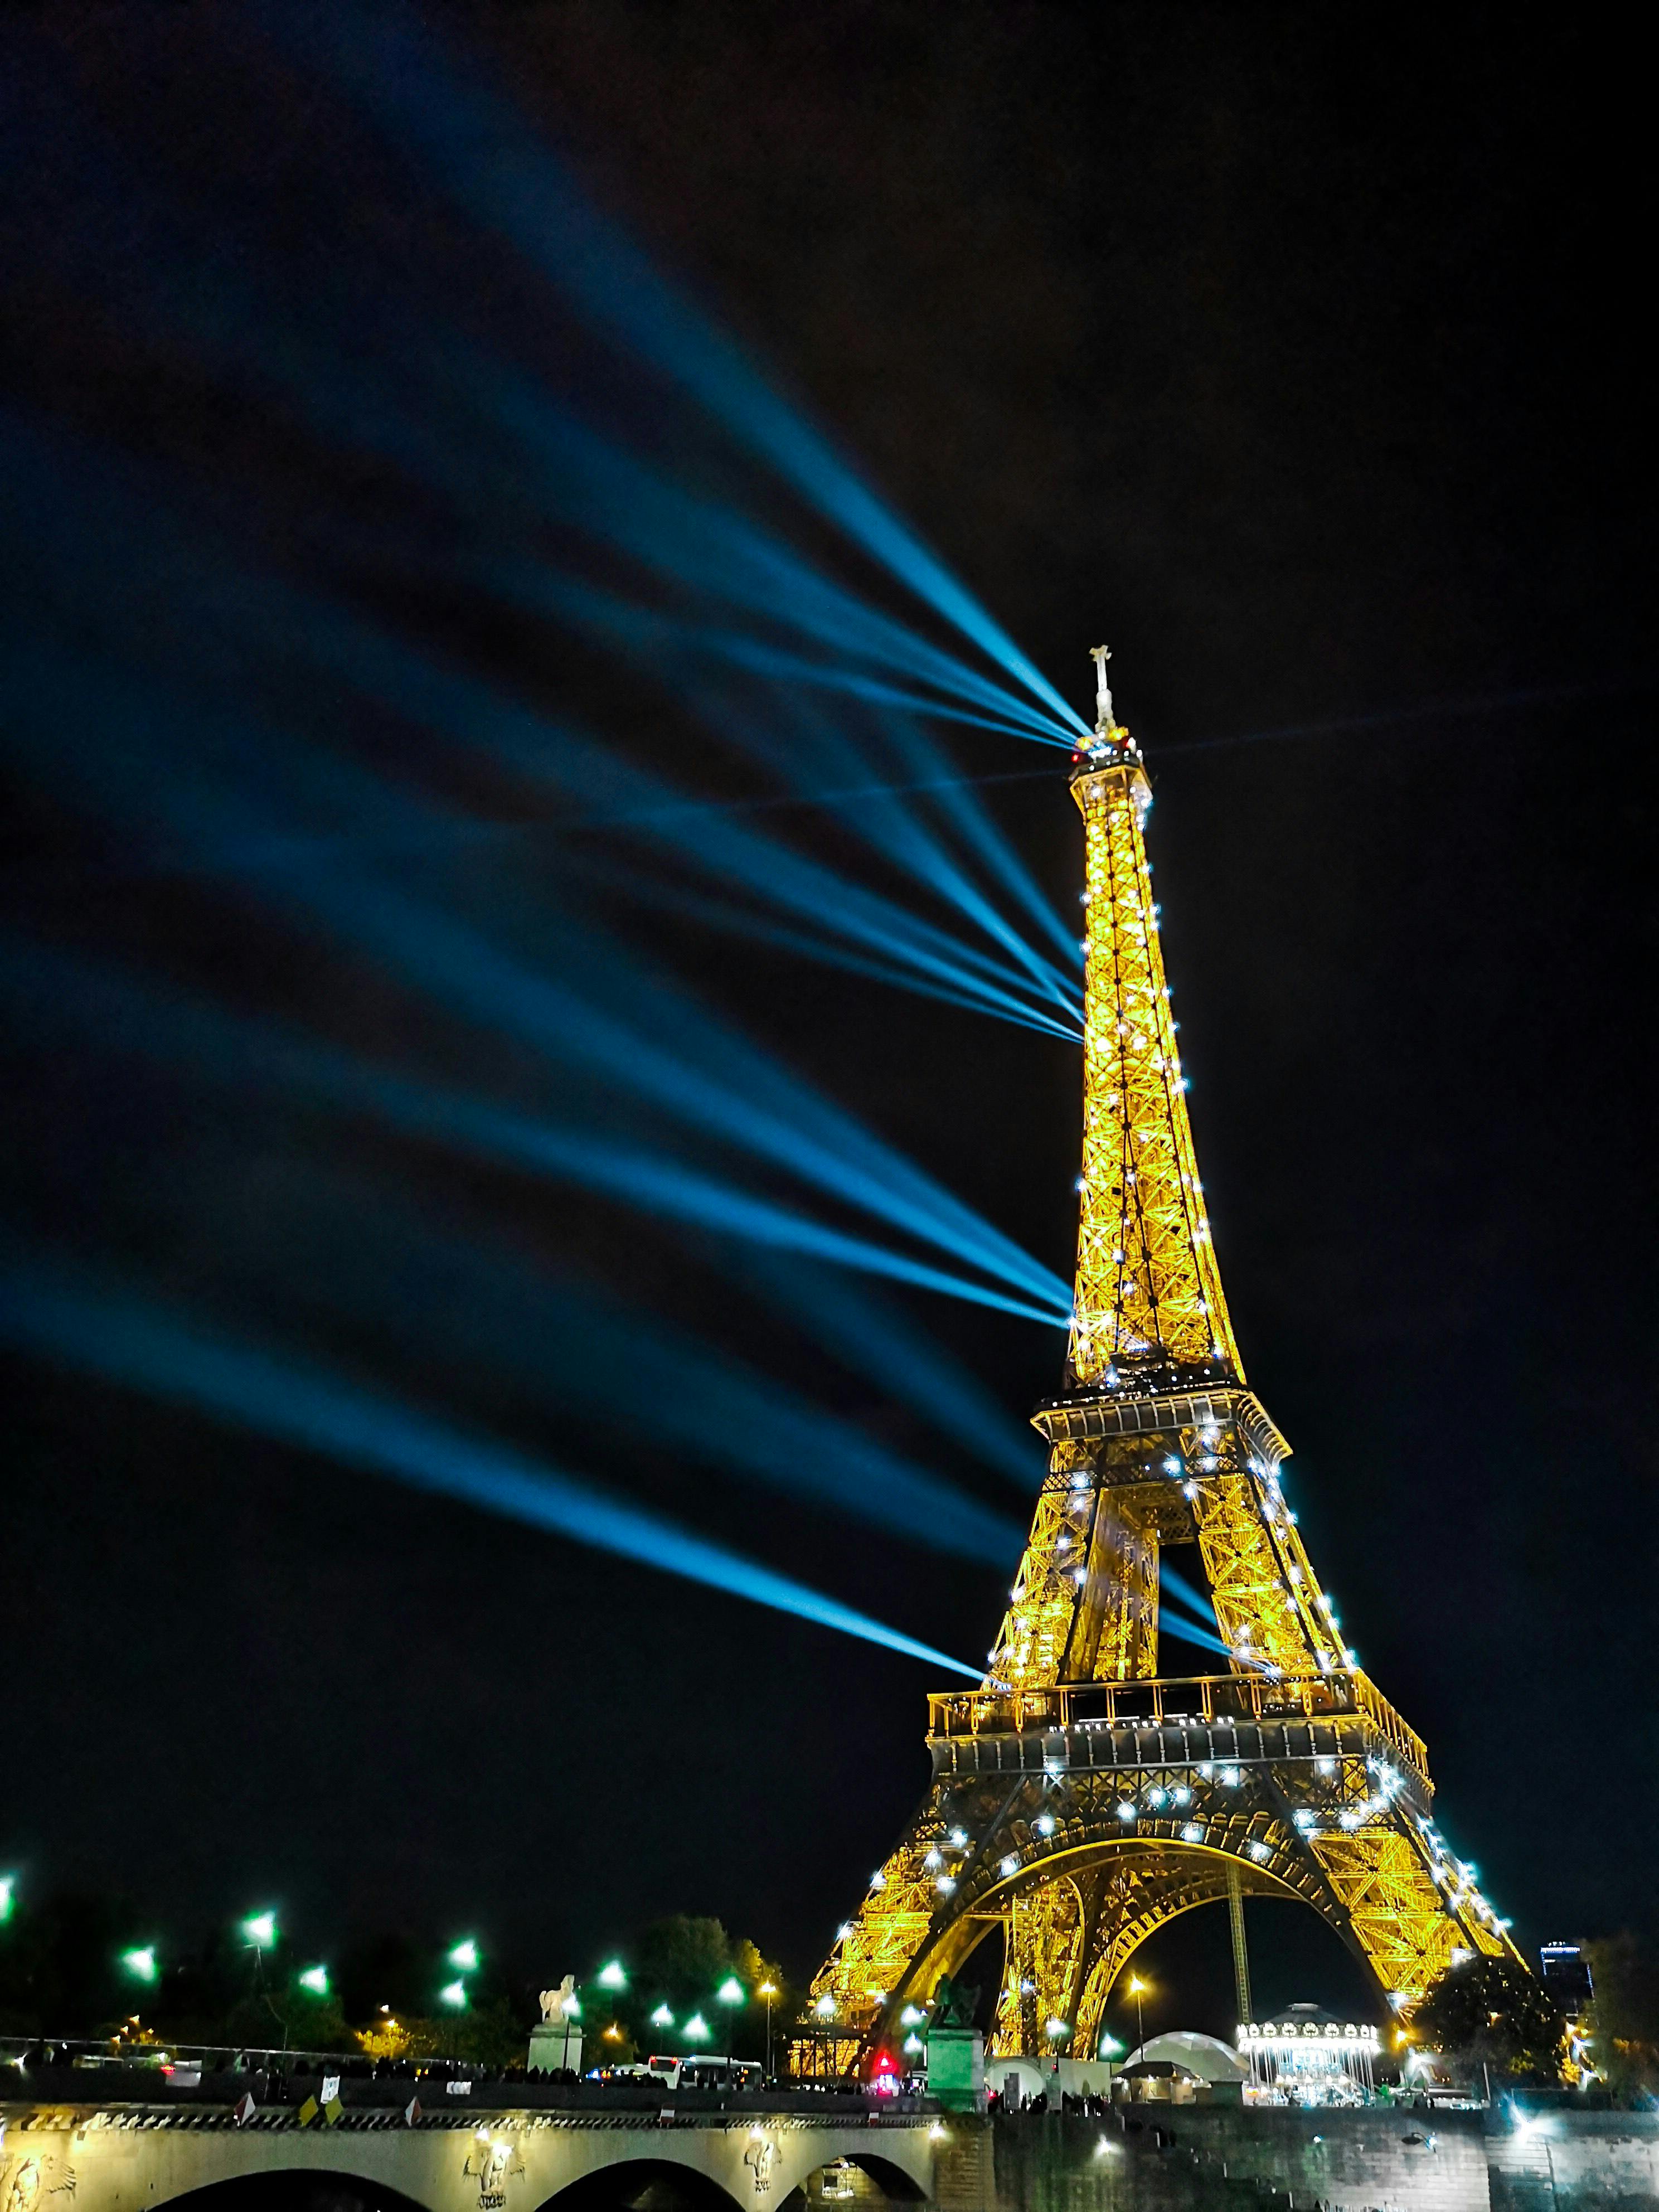 图片素材 : 埃菲尔铁塔, 巴黎, 黄昏, 晚间, 地标, 钟楼, 晚上, 灯, 尖塔, 尖顶, 夜图片 2066x2781 ...